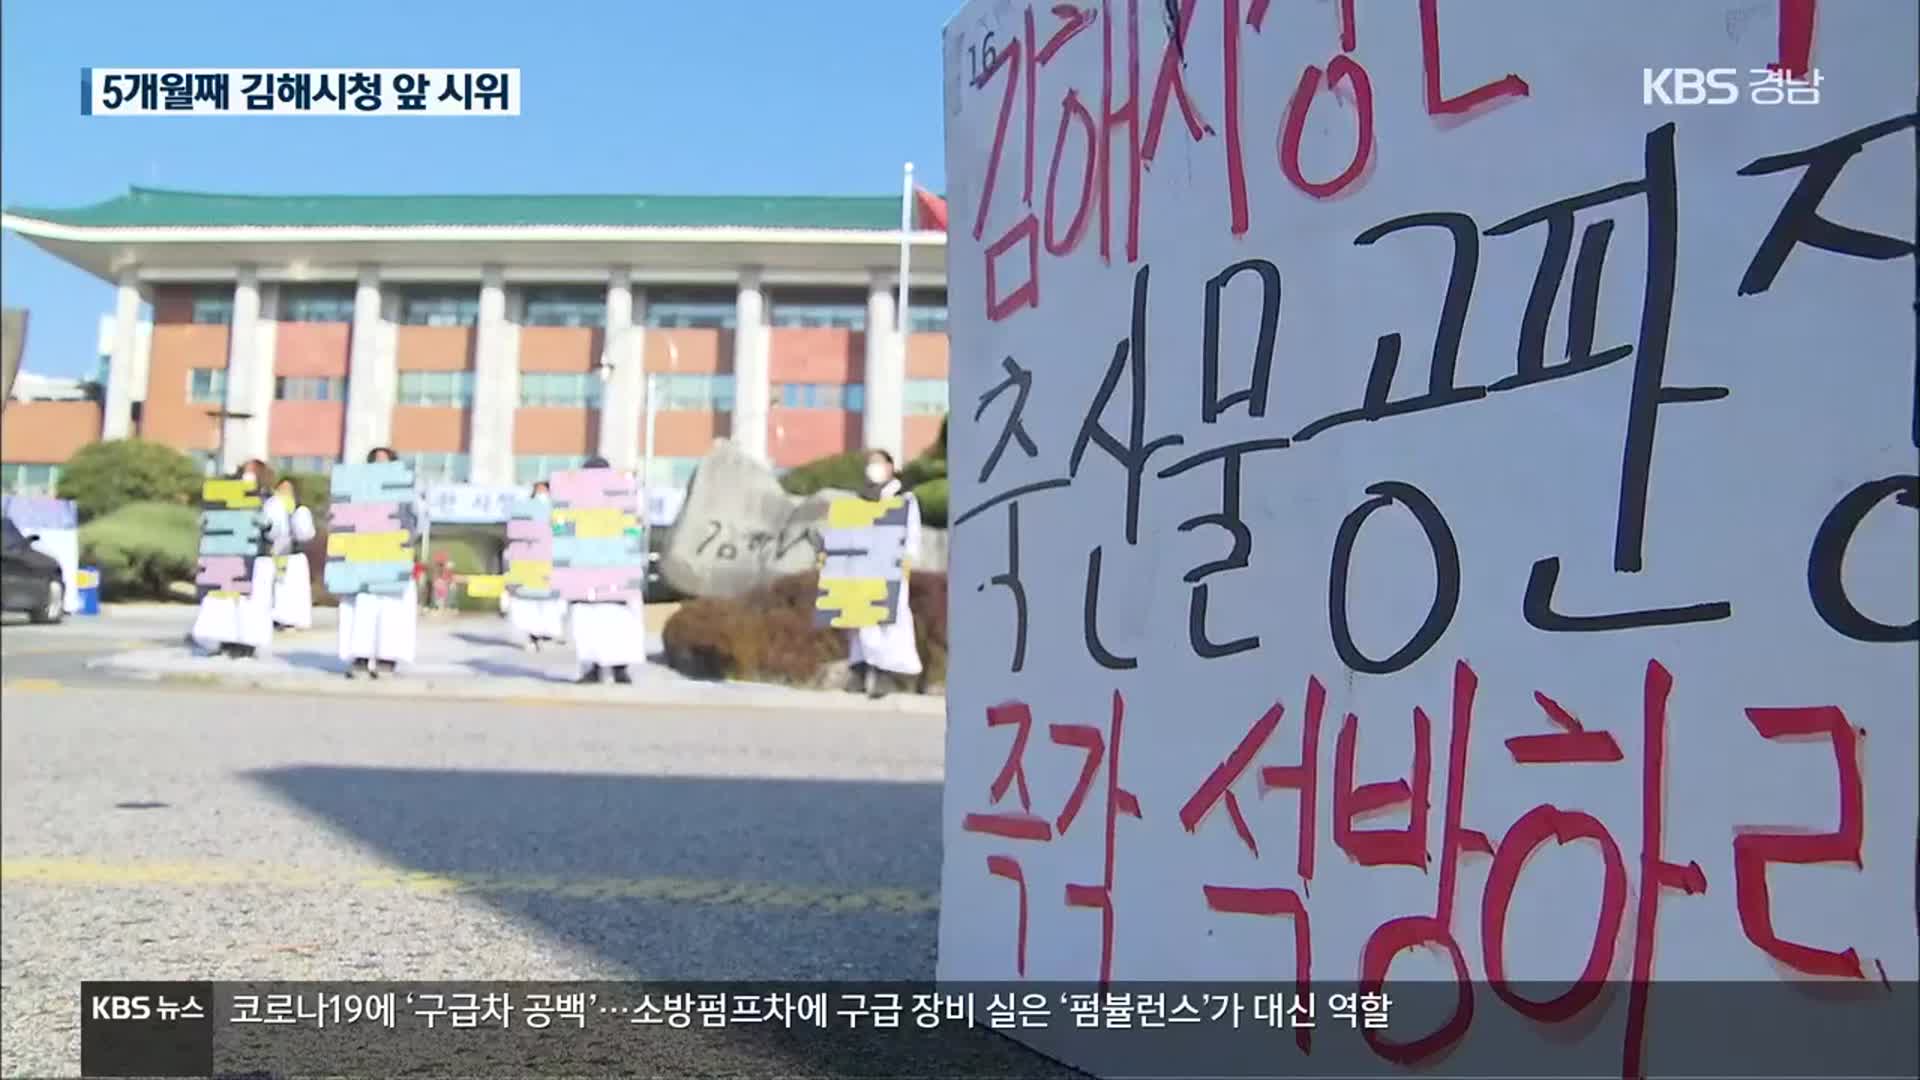 “상인 생존권 보장” 5달째 집회…김해시 중재 노력은?